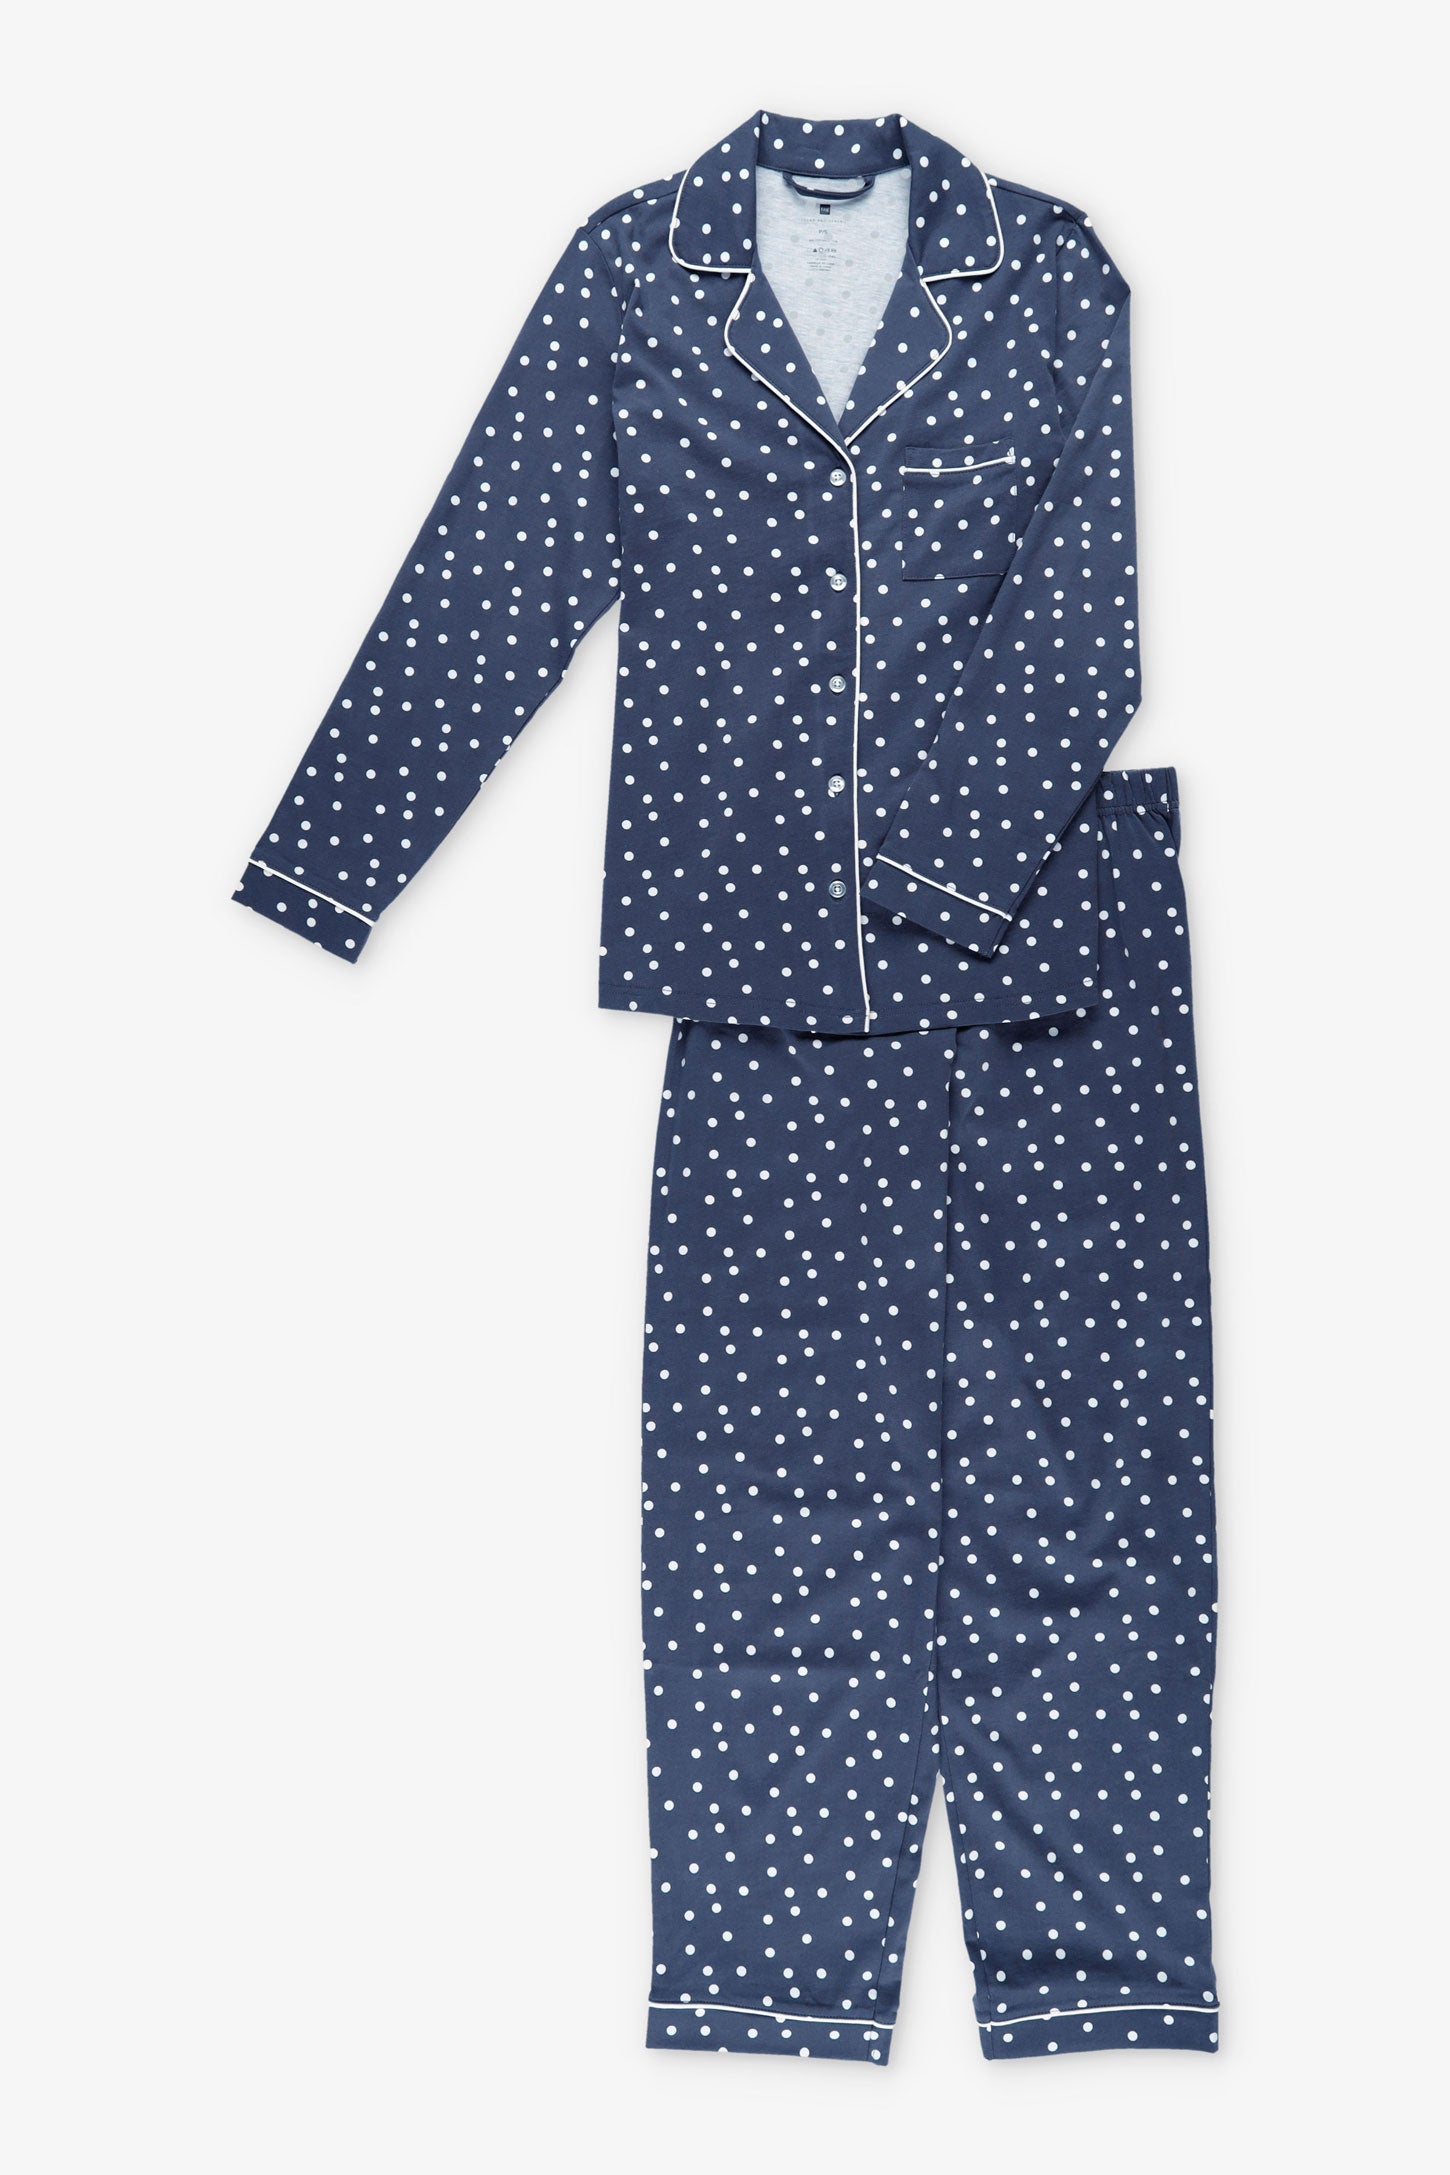 Pyjama 2-pièces chemise et pantalon coton - Femme && BLEU